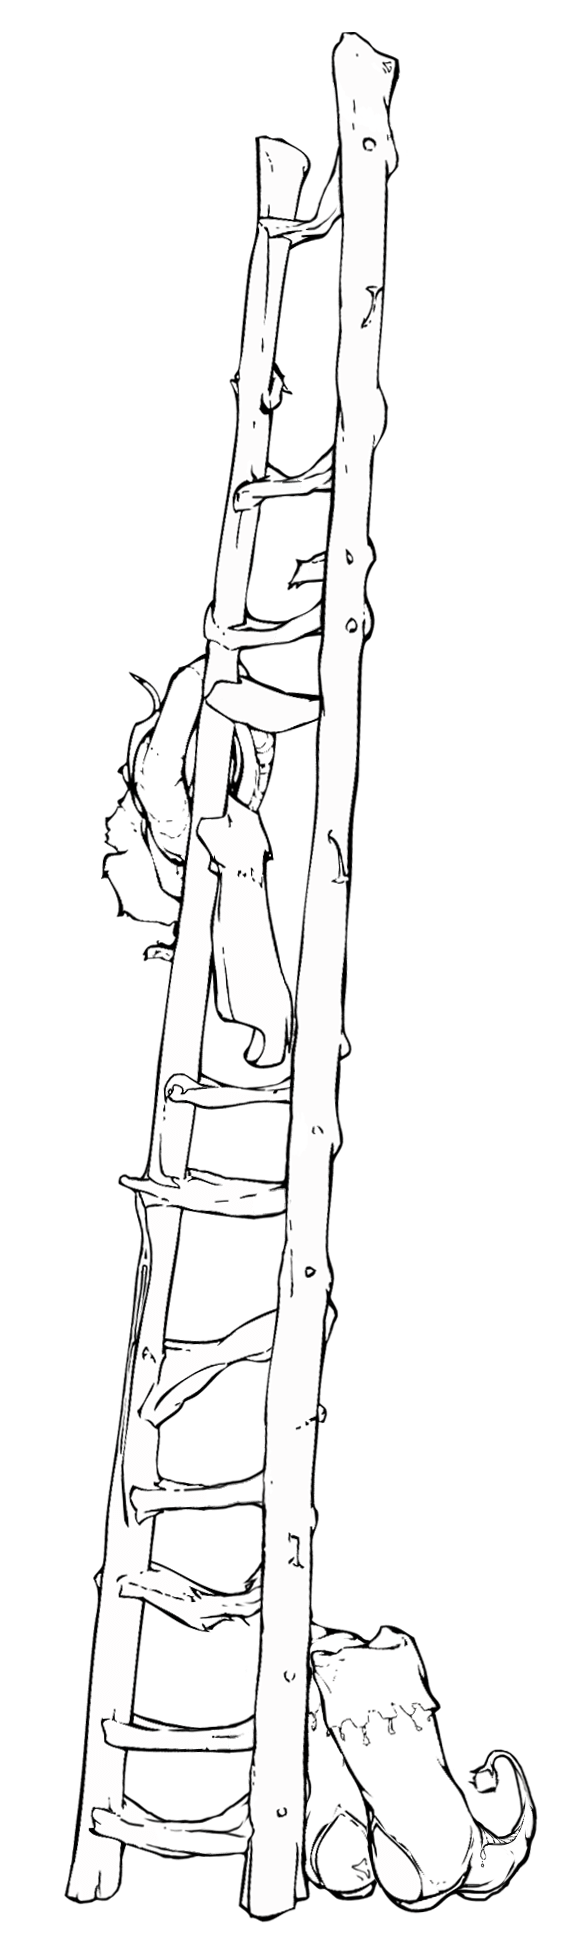 Illustration of a wooden ladder